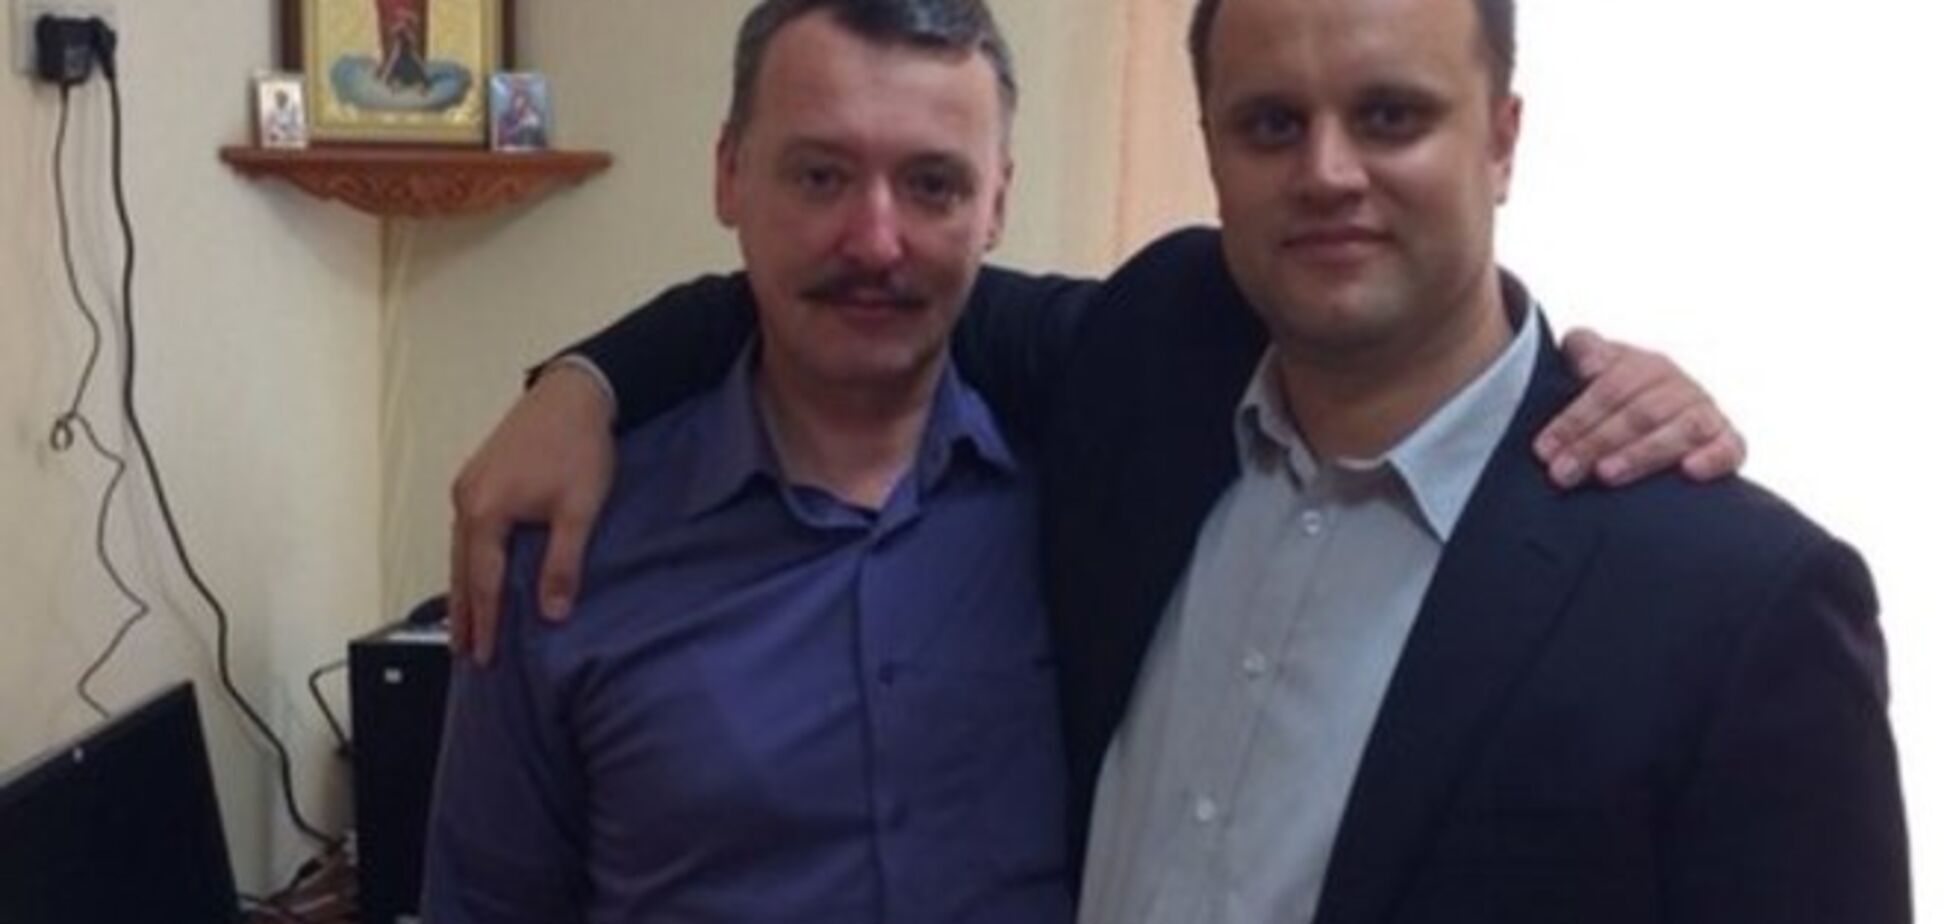 Губарев и Стрелков похвастались в соцсети своей 'неофициальной встречей'